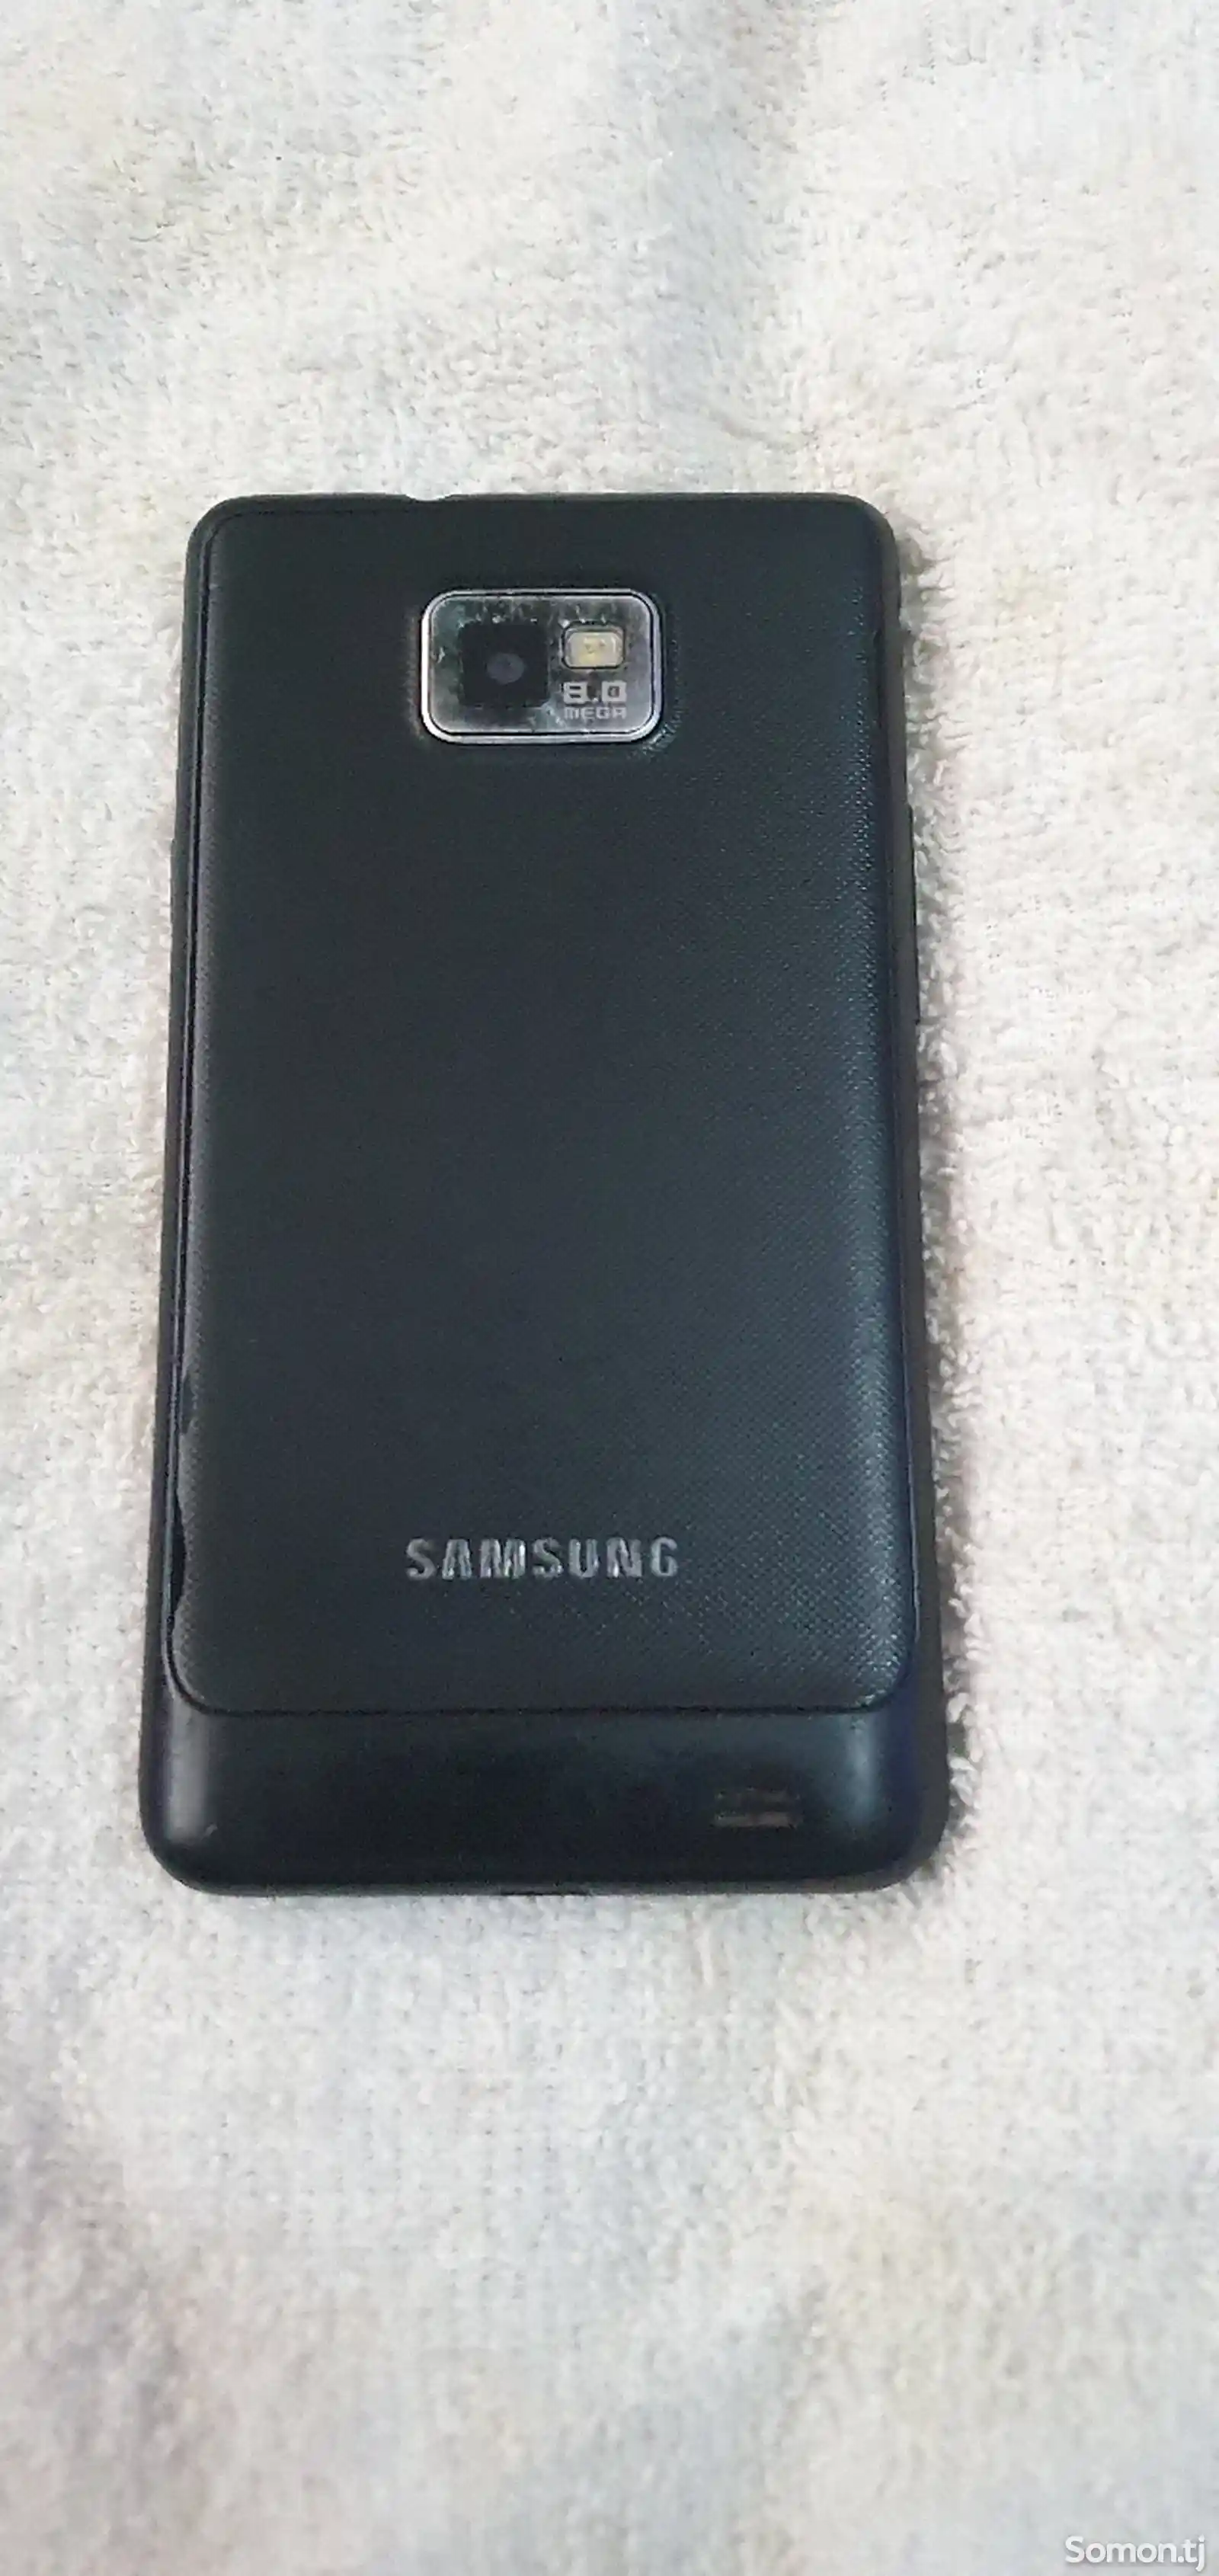 Samsung Galaxy S2-4